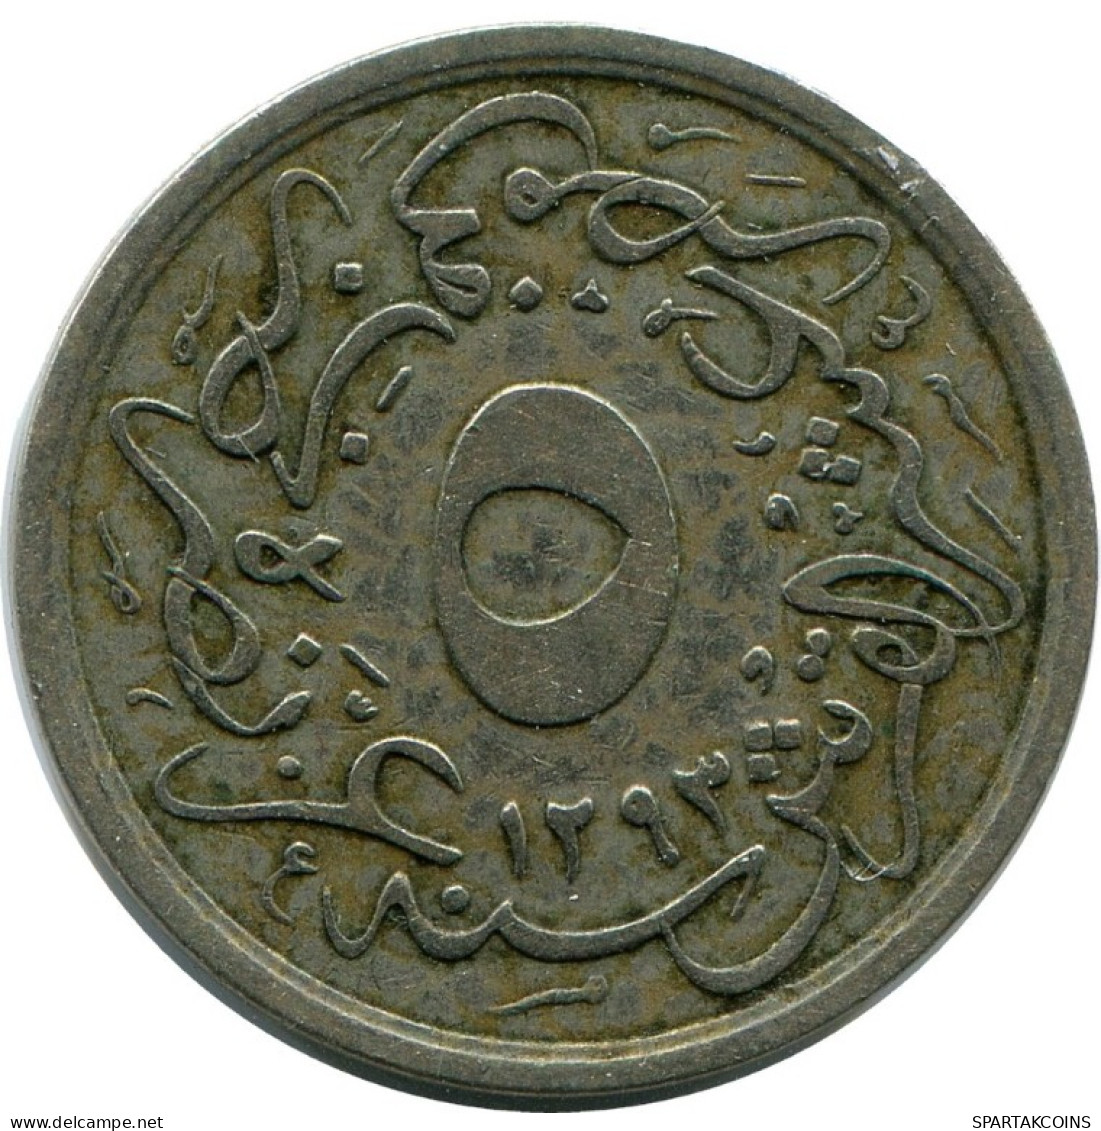 5/10 QIRSH 1899 EGIPTO EGYPT Islámico Moneda #AH279.10.E.A - Egypte